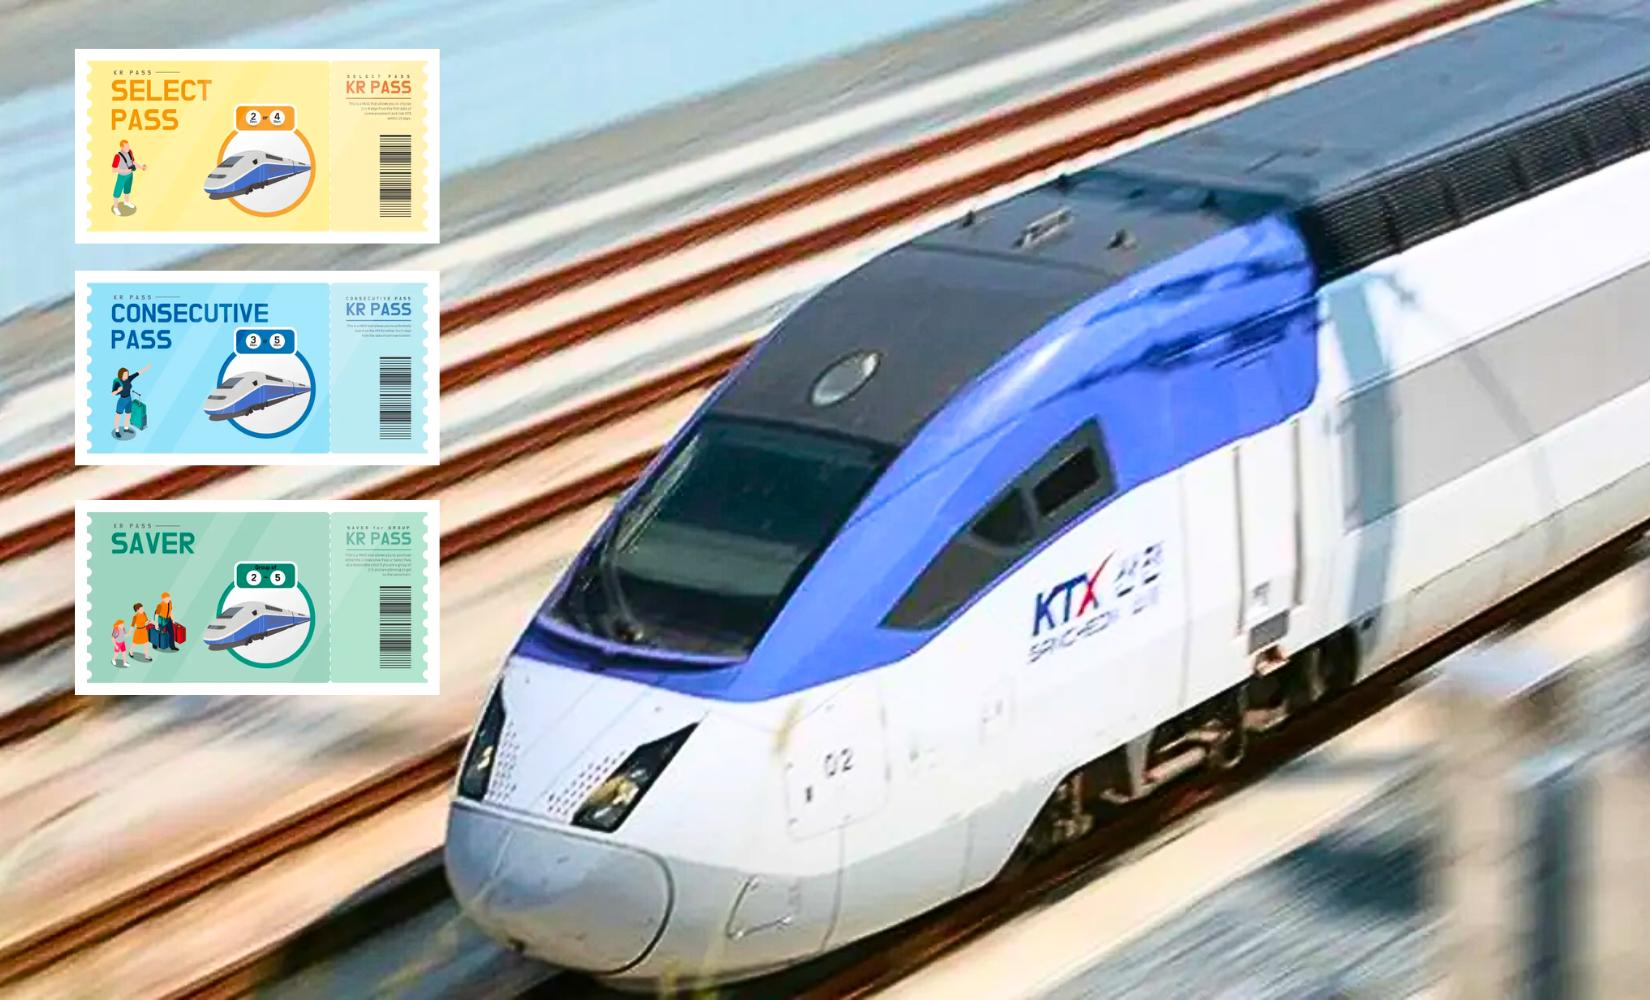 KR PASS (Korail Pass): Vé tàu cao tốc KTX không giới hạn, tiết kiệm ở Hàn